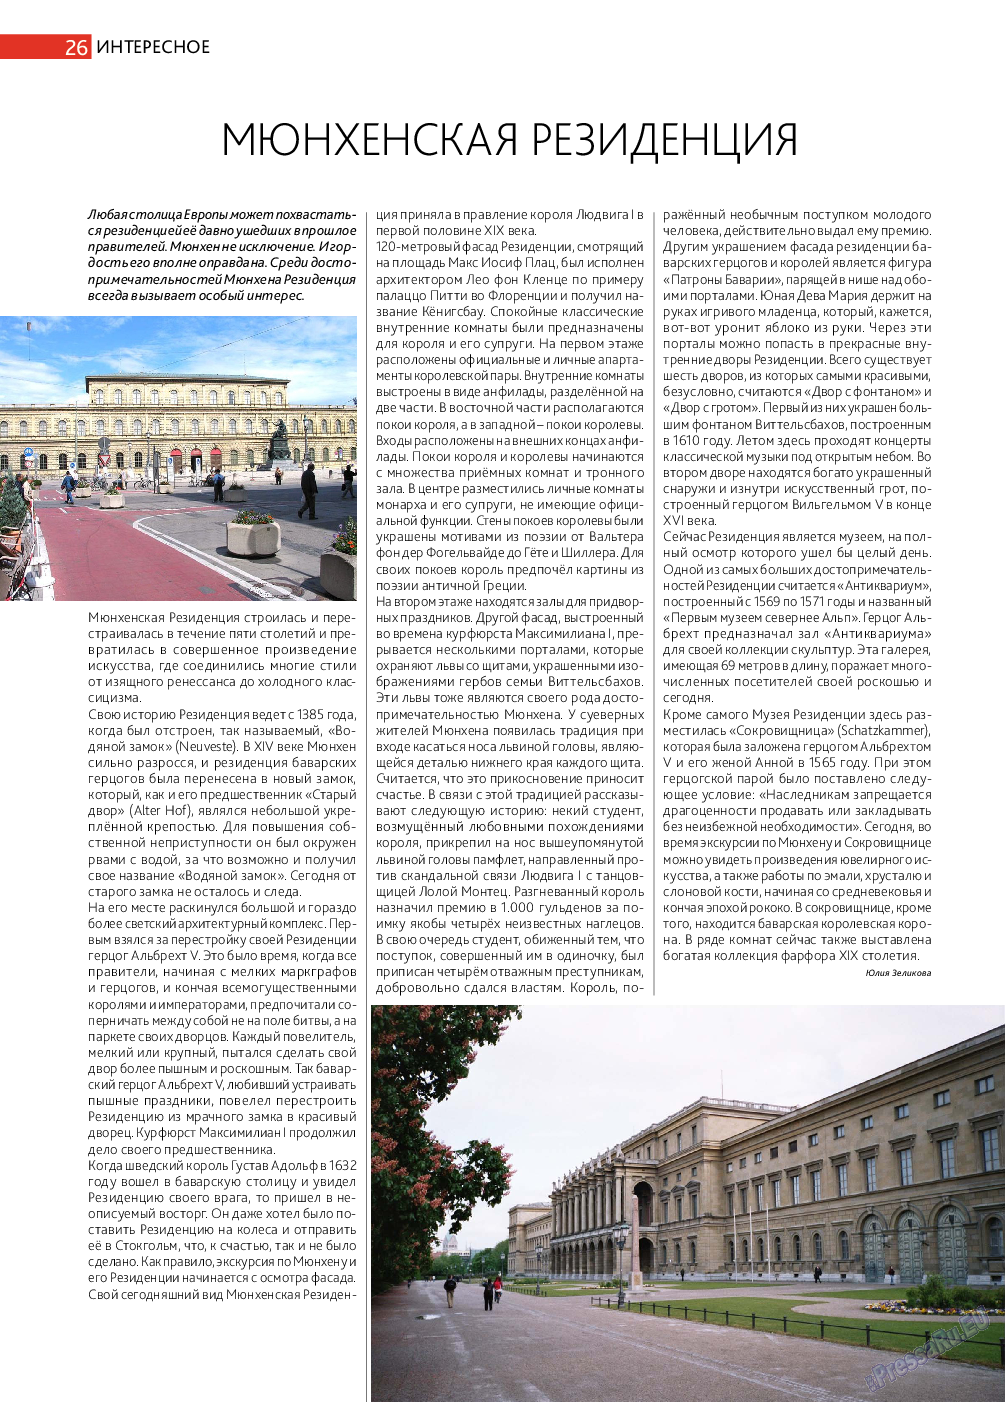 Афиша Augsburg (журнал). 2014 год, номер 7, стр. 26